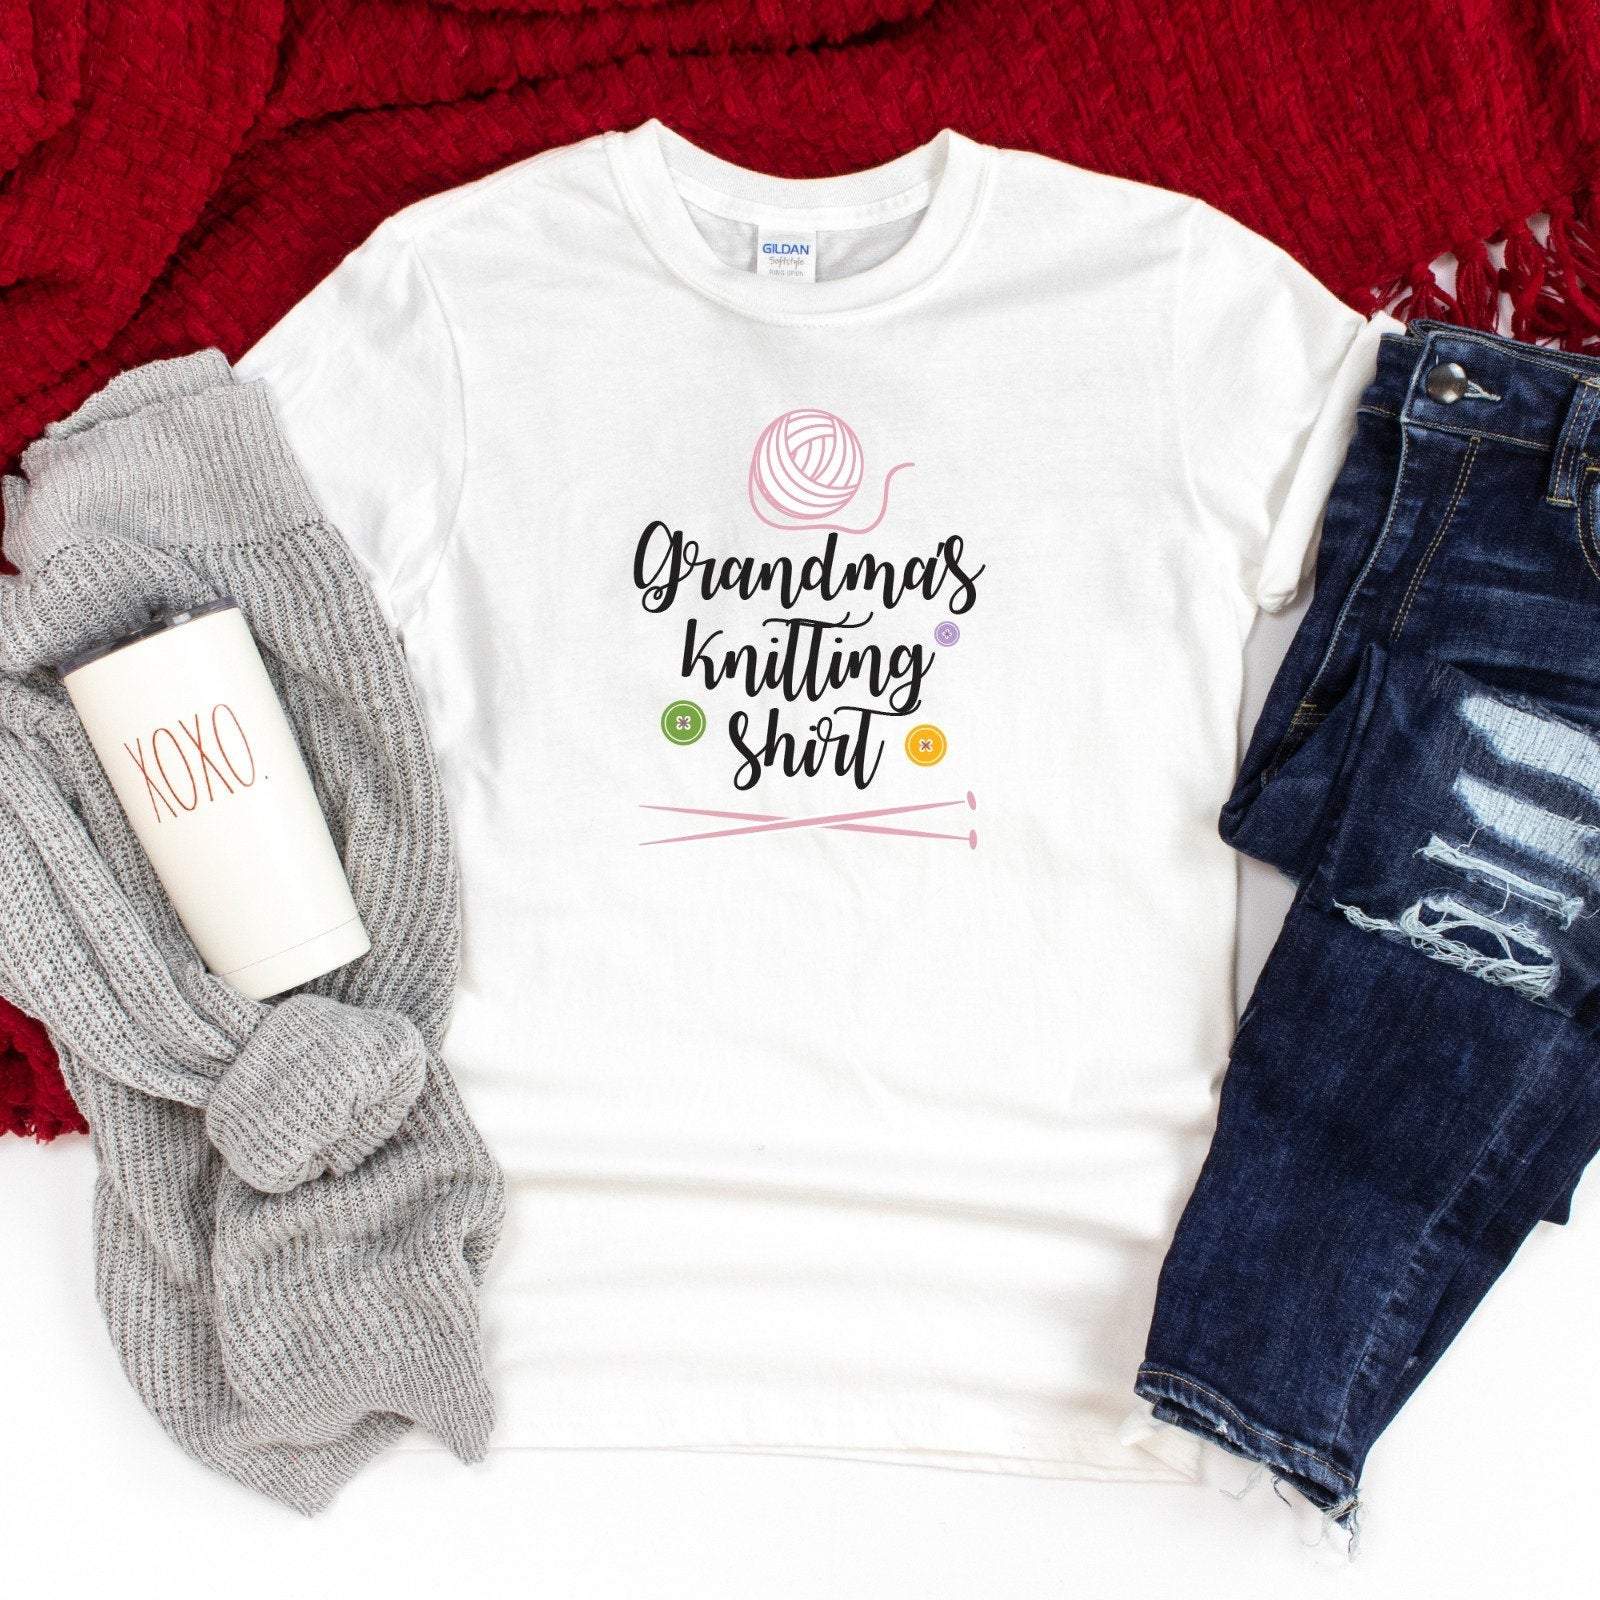 Grandma's knitting shirt, knitter t-shirt, Mother's Day Gift